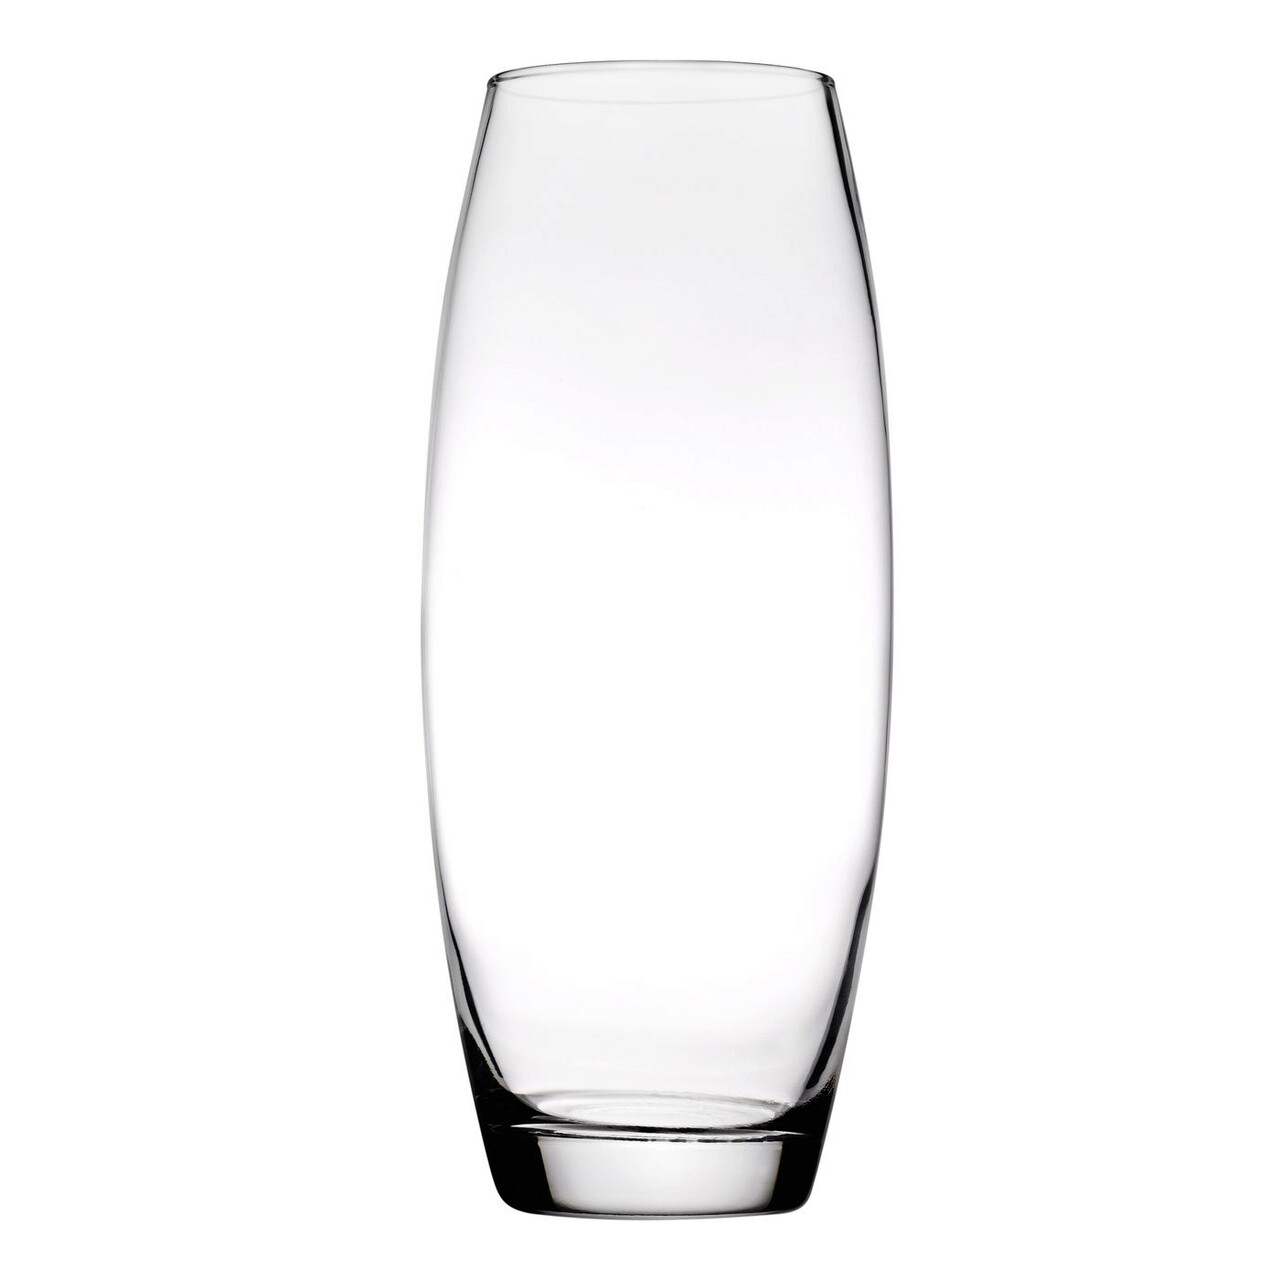 Vaza Flora, Pasabahce, 1.7 L, sticla, transparent